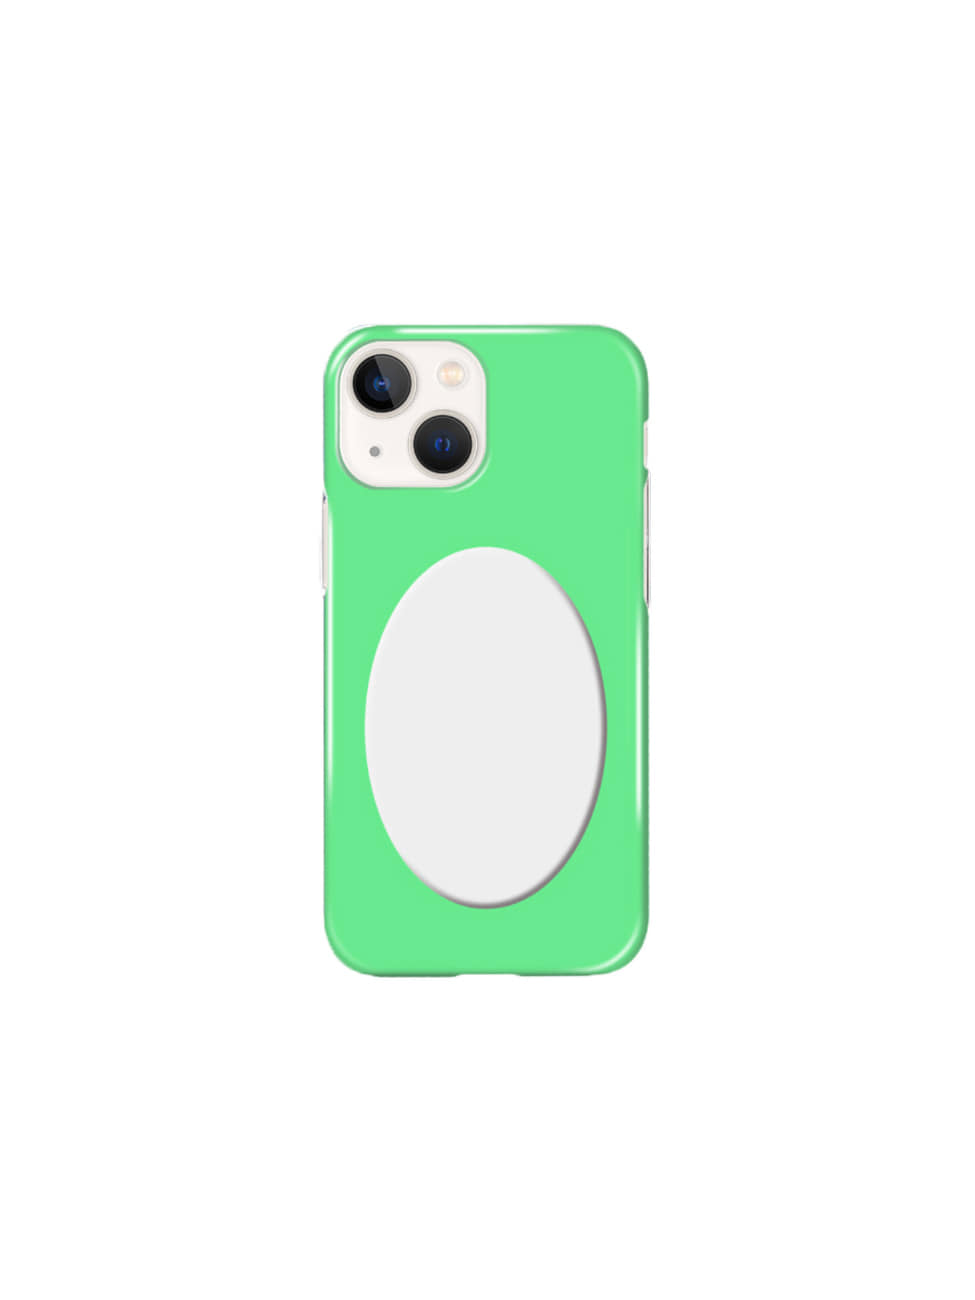 Reflector Iphone Hard Case Green